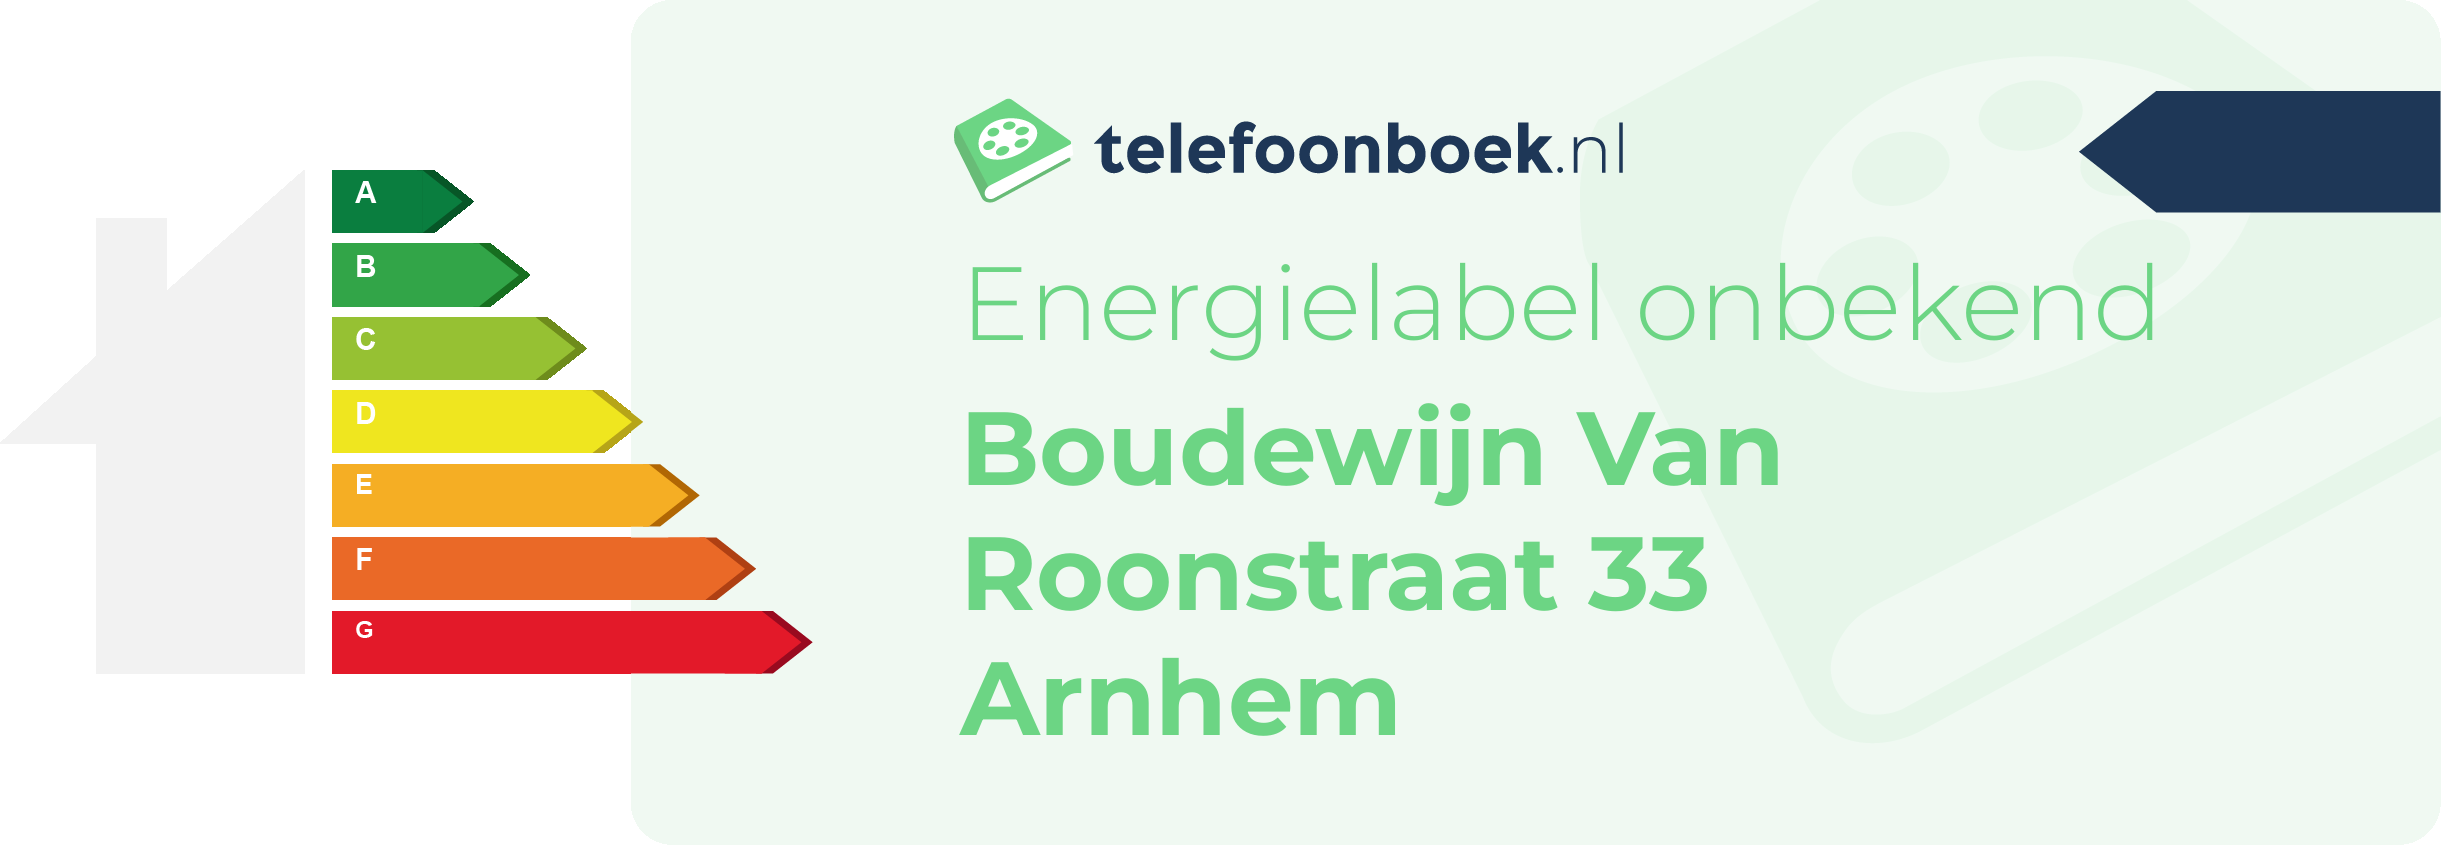 Energielabel Boudewijn Van Roonstraat 33 Arnhem